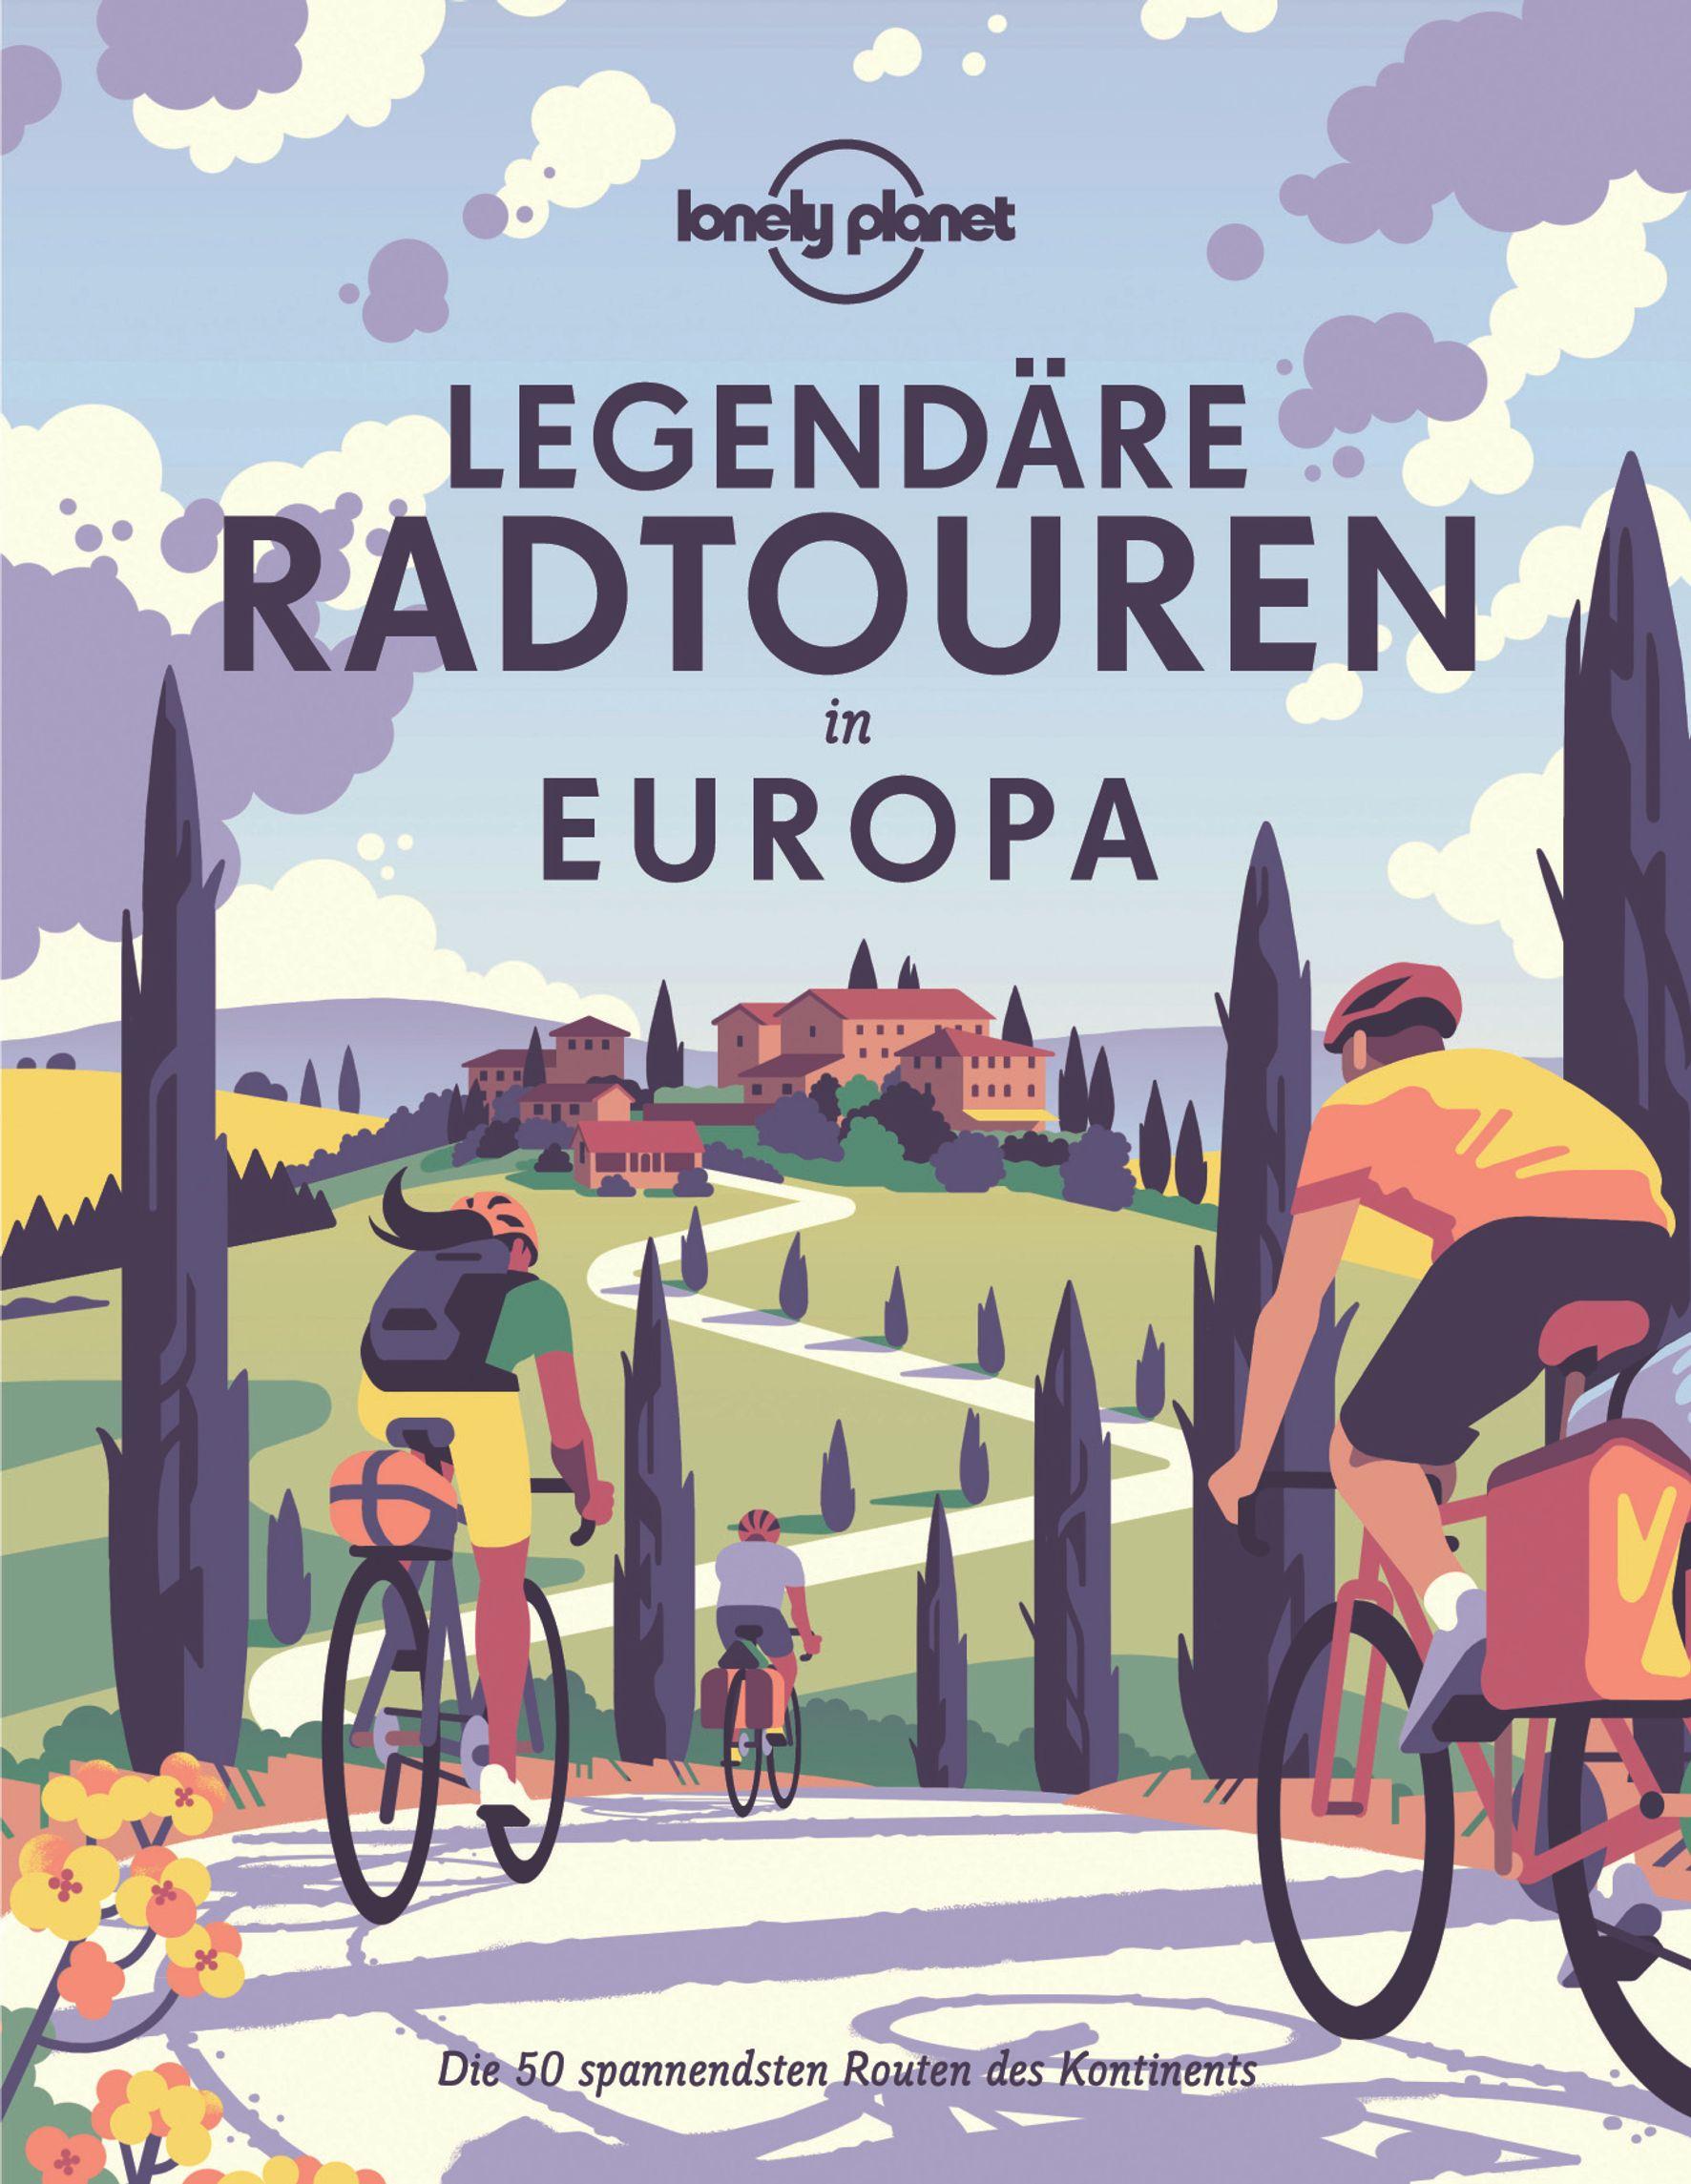 Lonely Planet Bildband Legendäre Radtouren in Europa Die 50 spannendsten Touren des Kontinents